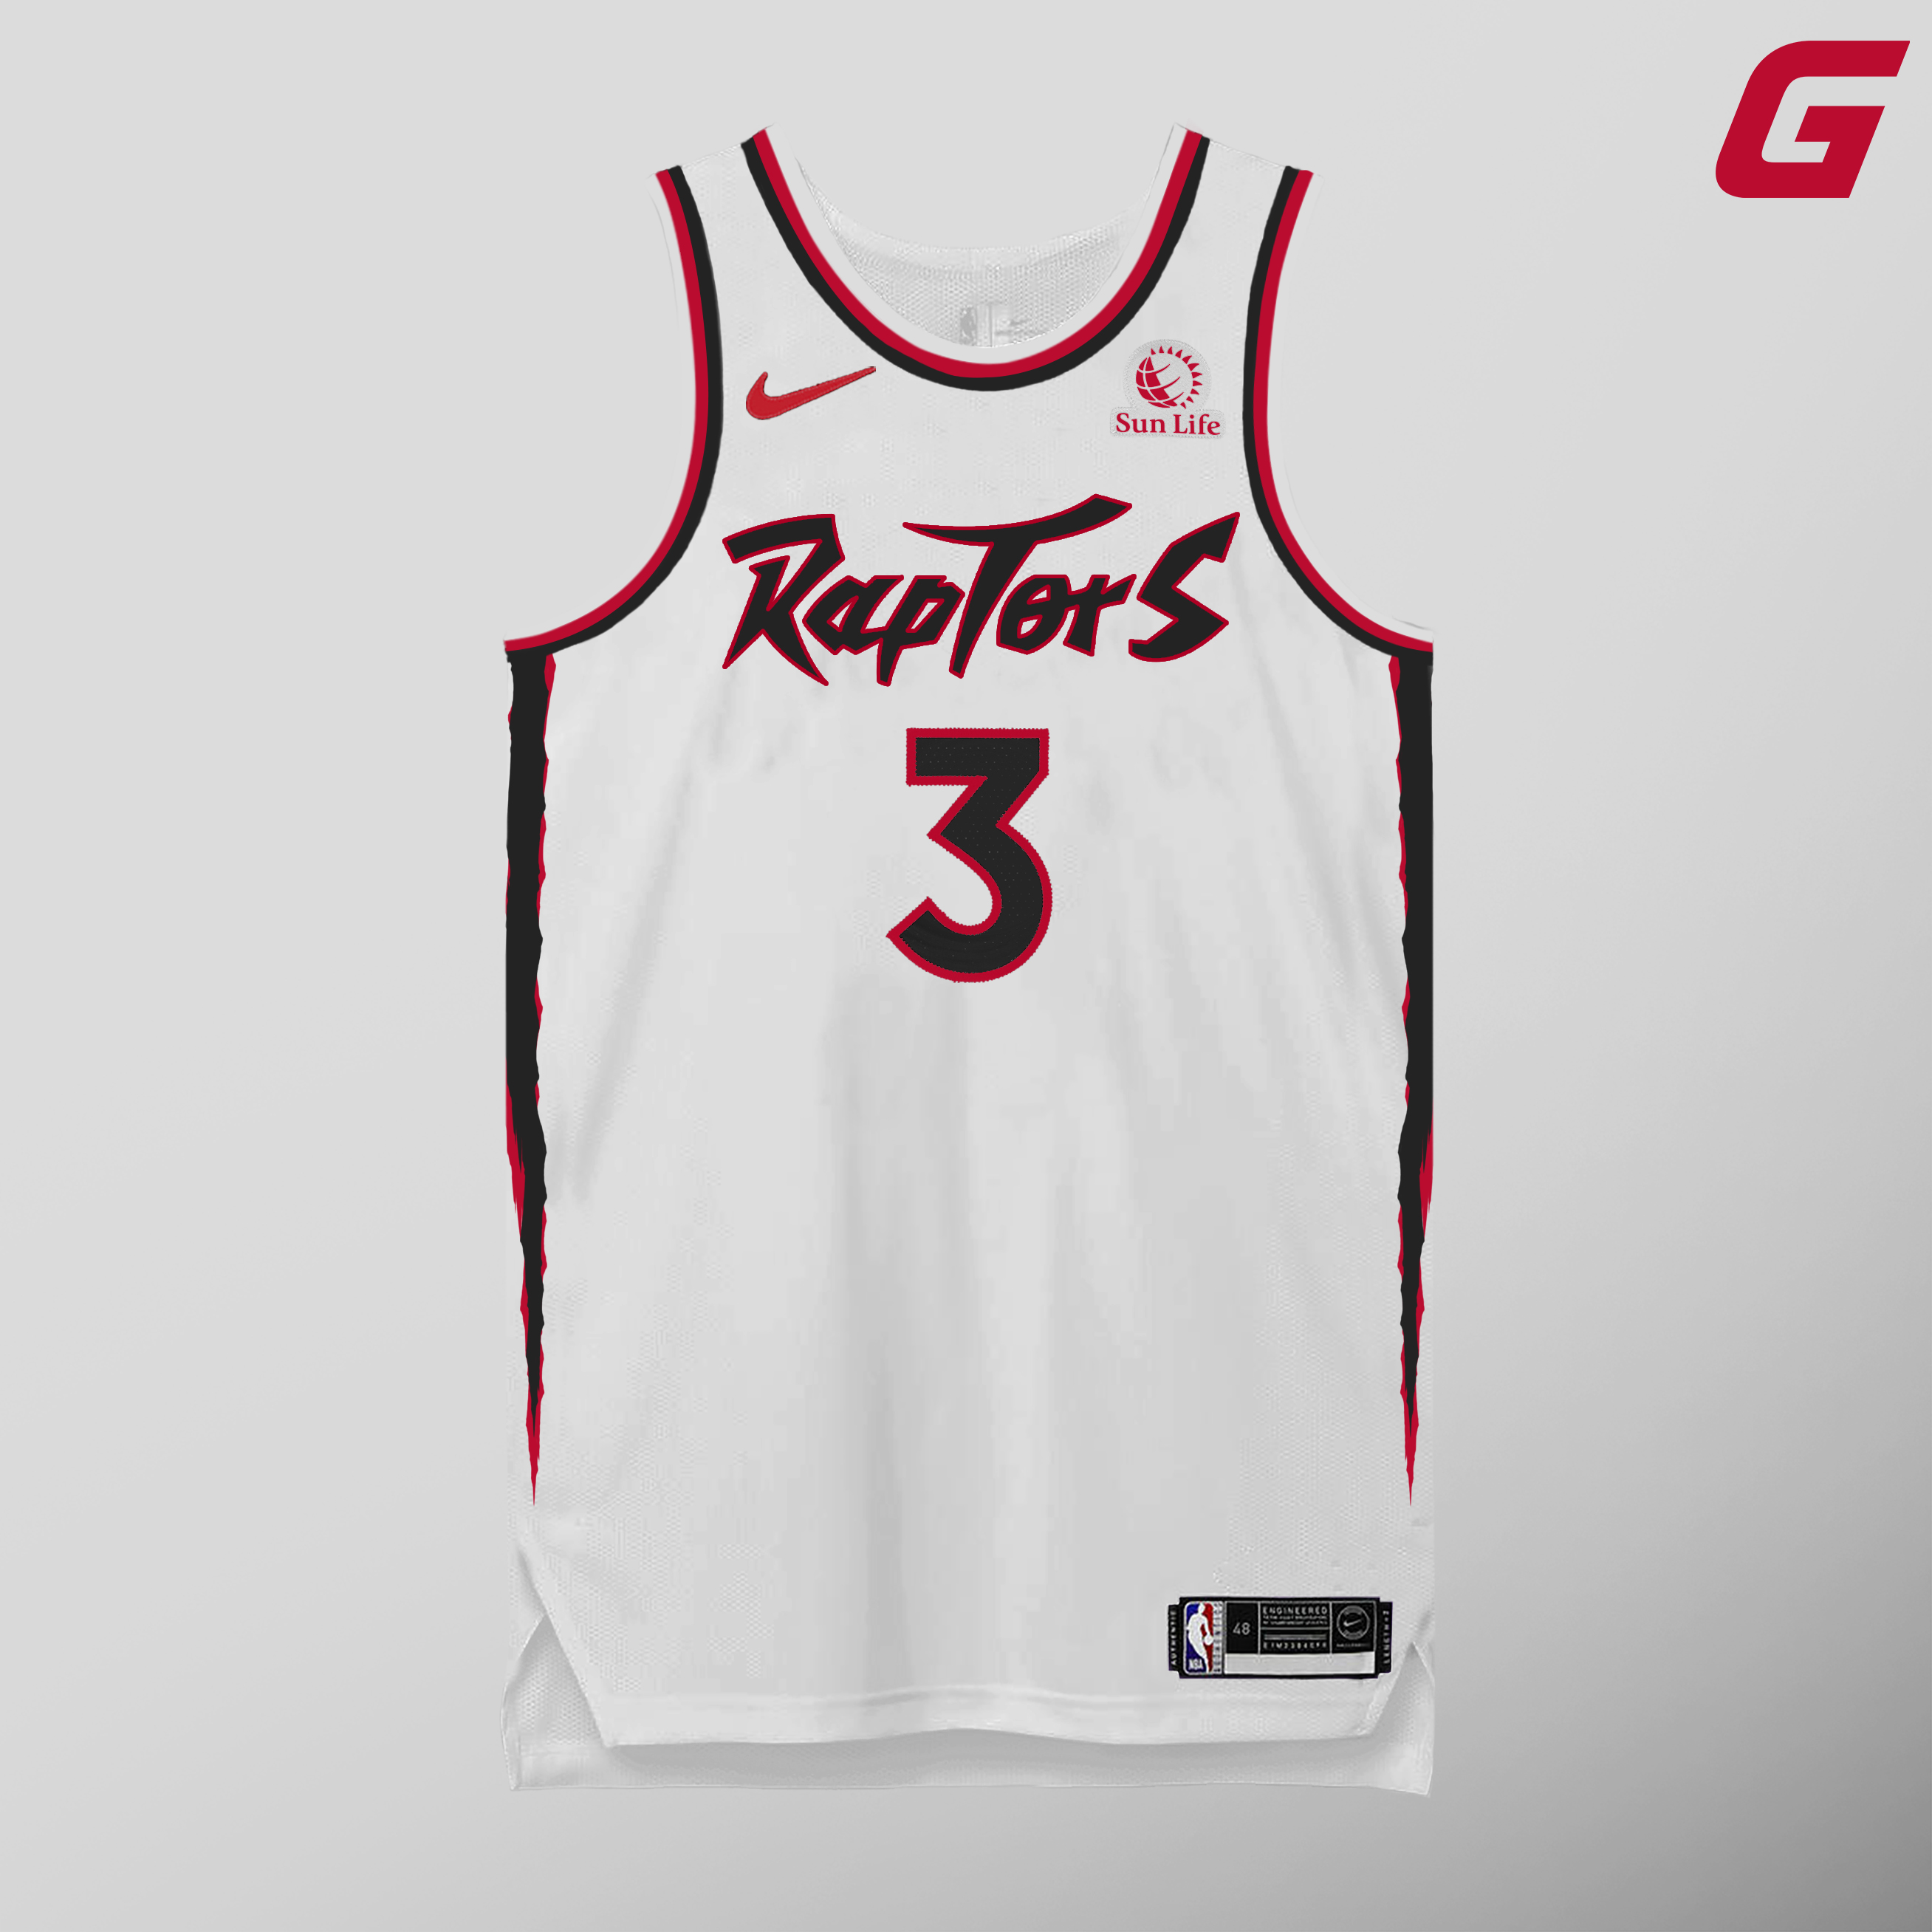 Toronto Raptors Jersey Redesign